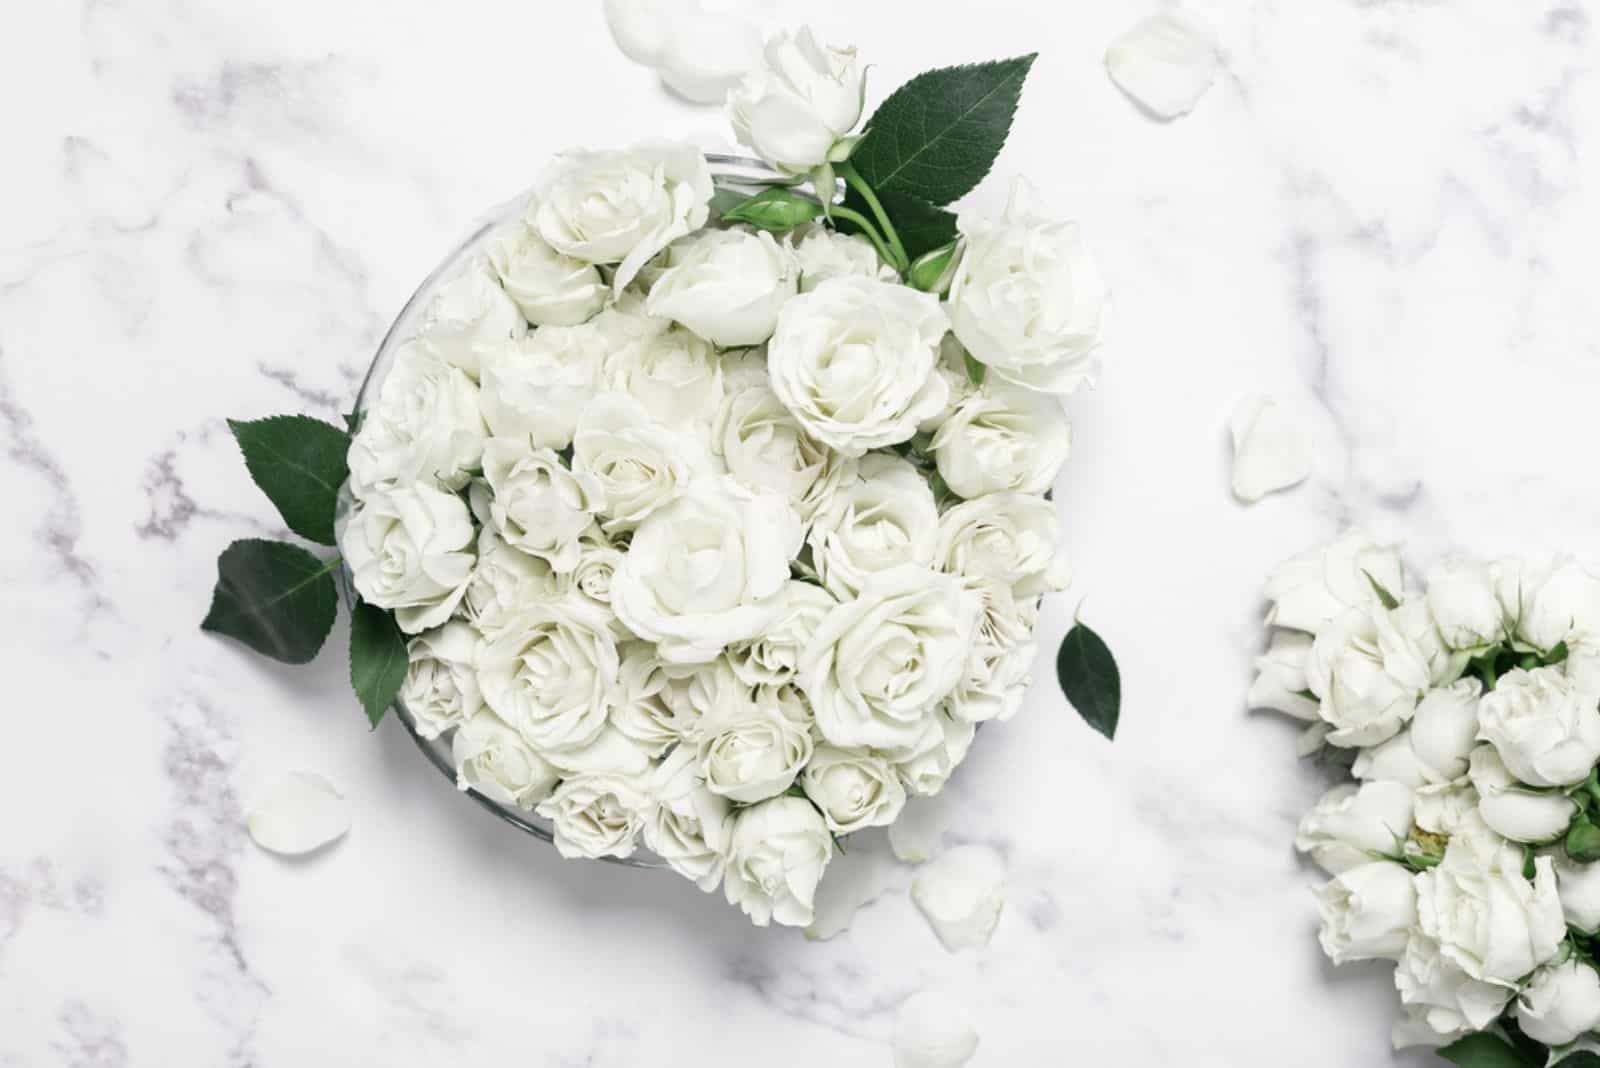 bouquet decoratif fait maison avec des roses blanches sur une table en marbre